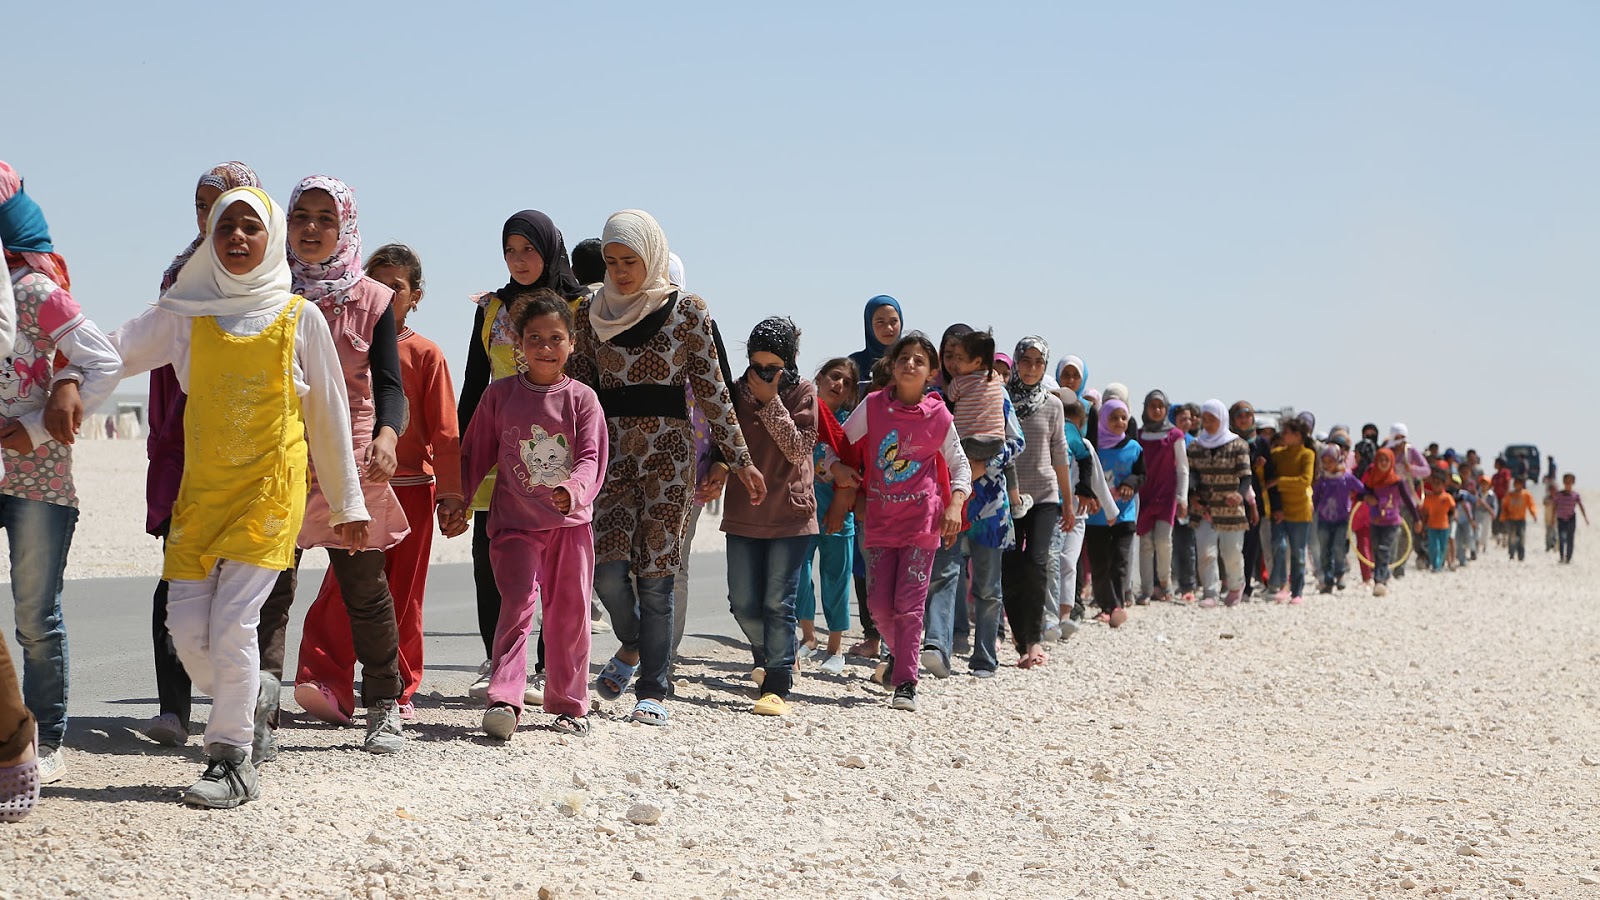 Η Άγκυρα απειλεί να ανοίξει τα ελληνοτουρκικά σύνορα για 4,8 εκ. μουσουλμάνους από Συρία, Αφγανιστάν, Πακιστάν κλπ